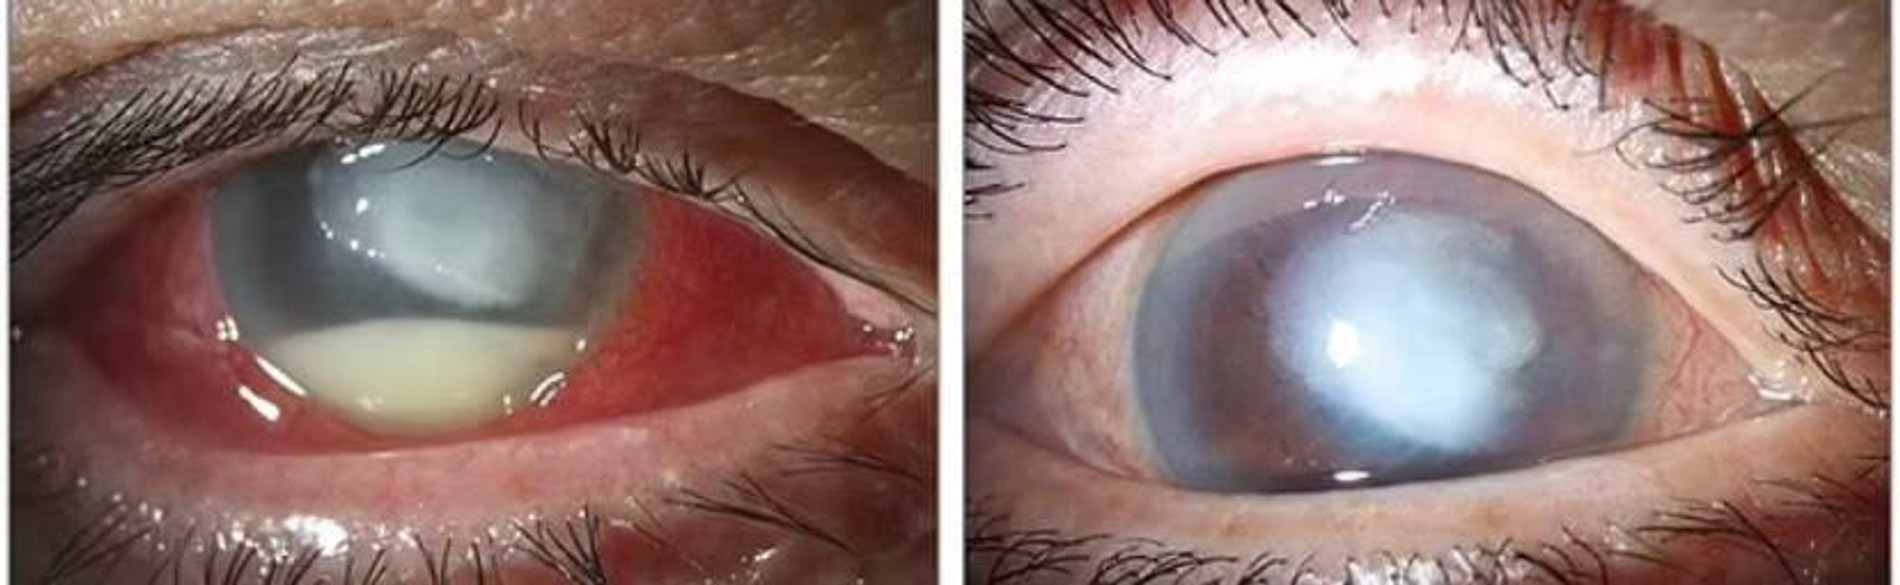 Фото зараженного глаза с применением щелевой лампы до и спустя месяц после лечения
Фото: Daily Mail 